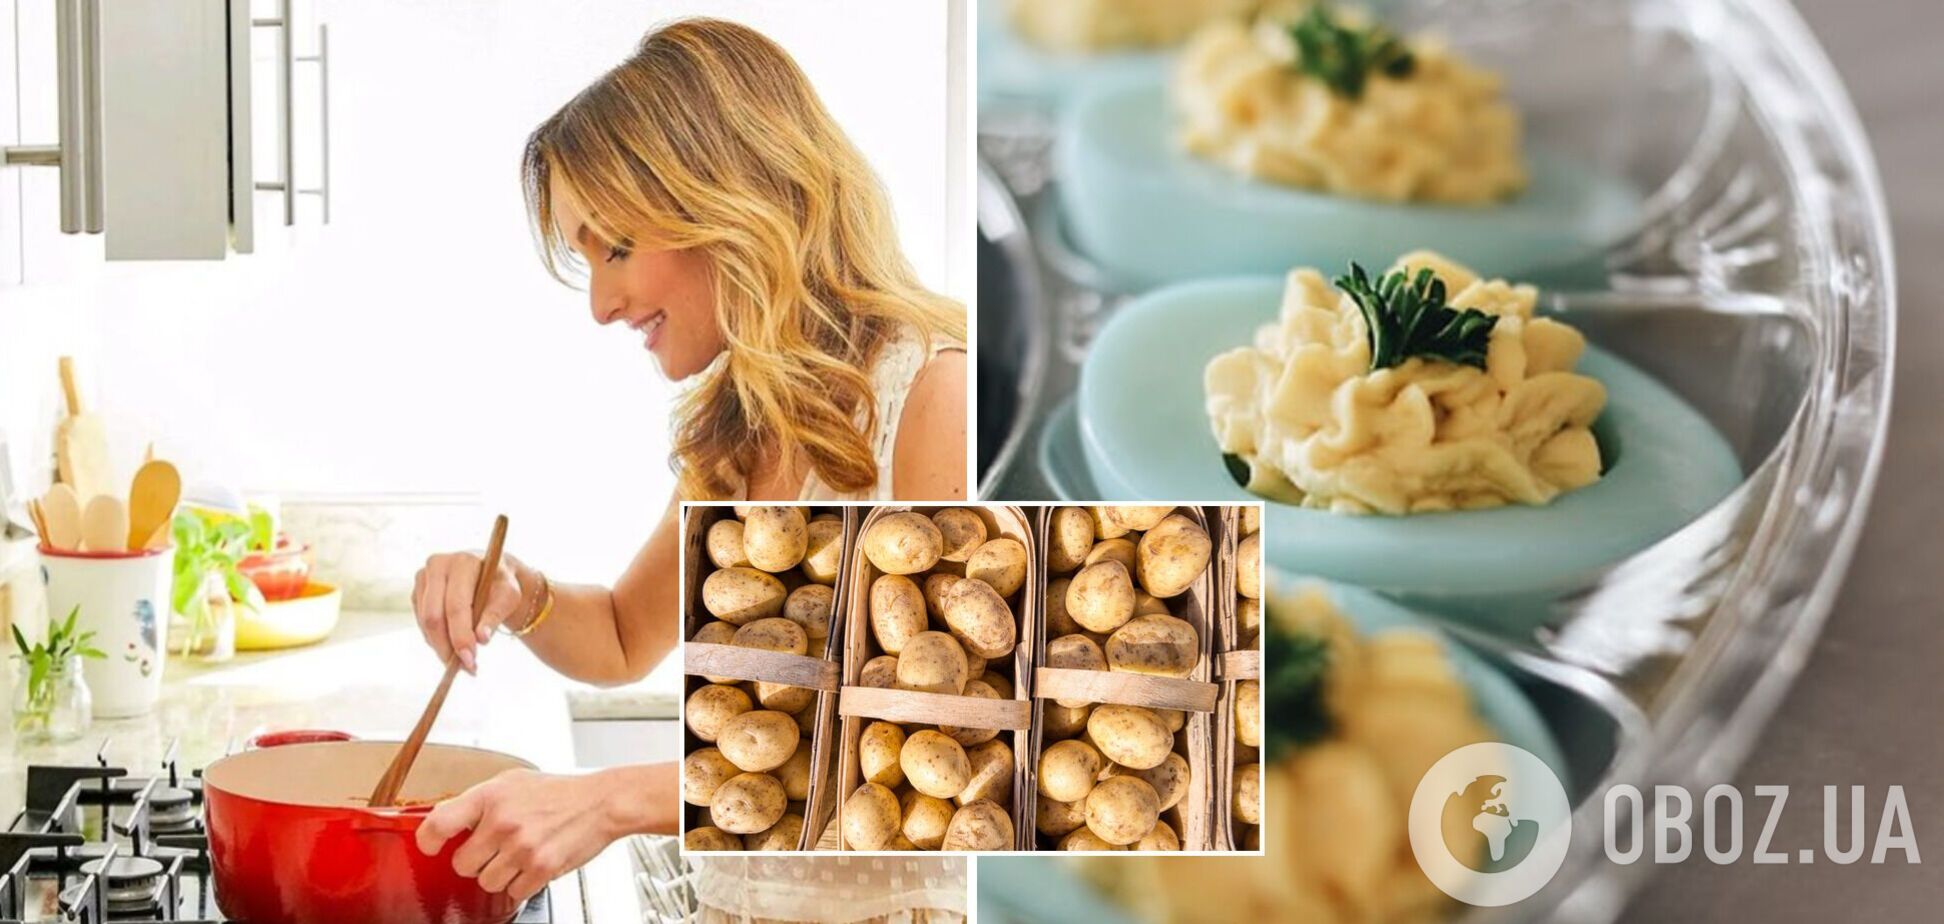 Итальянская хитрость сделает картофельное пюре невероятным: секрет от шеф-повара